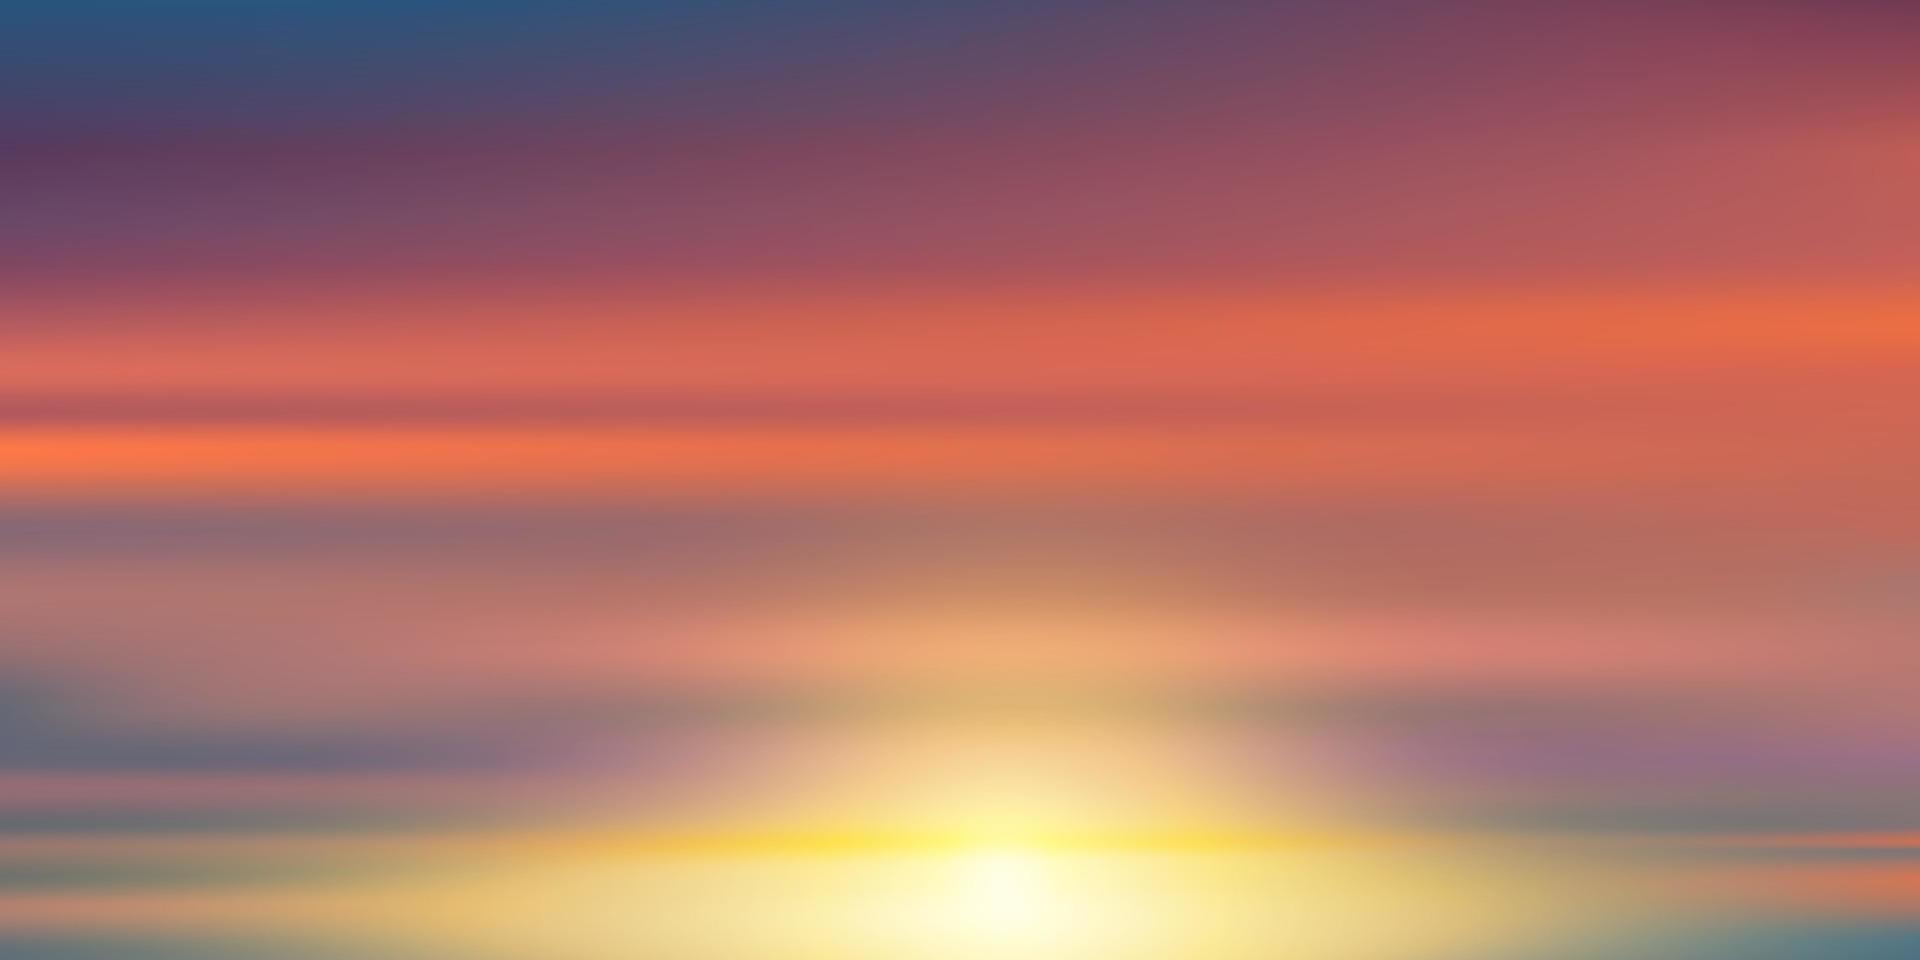 himmel sonnenuntergang abend mit orange, gelb, rosa, lila, blaue farbe, goldene stunde dramatische dämmerung landschaft, vektorbanner horizontaler romantischer himmel von sonnenaufgang oder sonnenlicht für vier jahreszeiten hintergrund. vektor